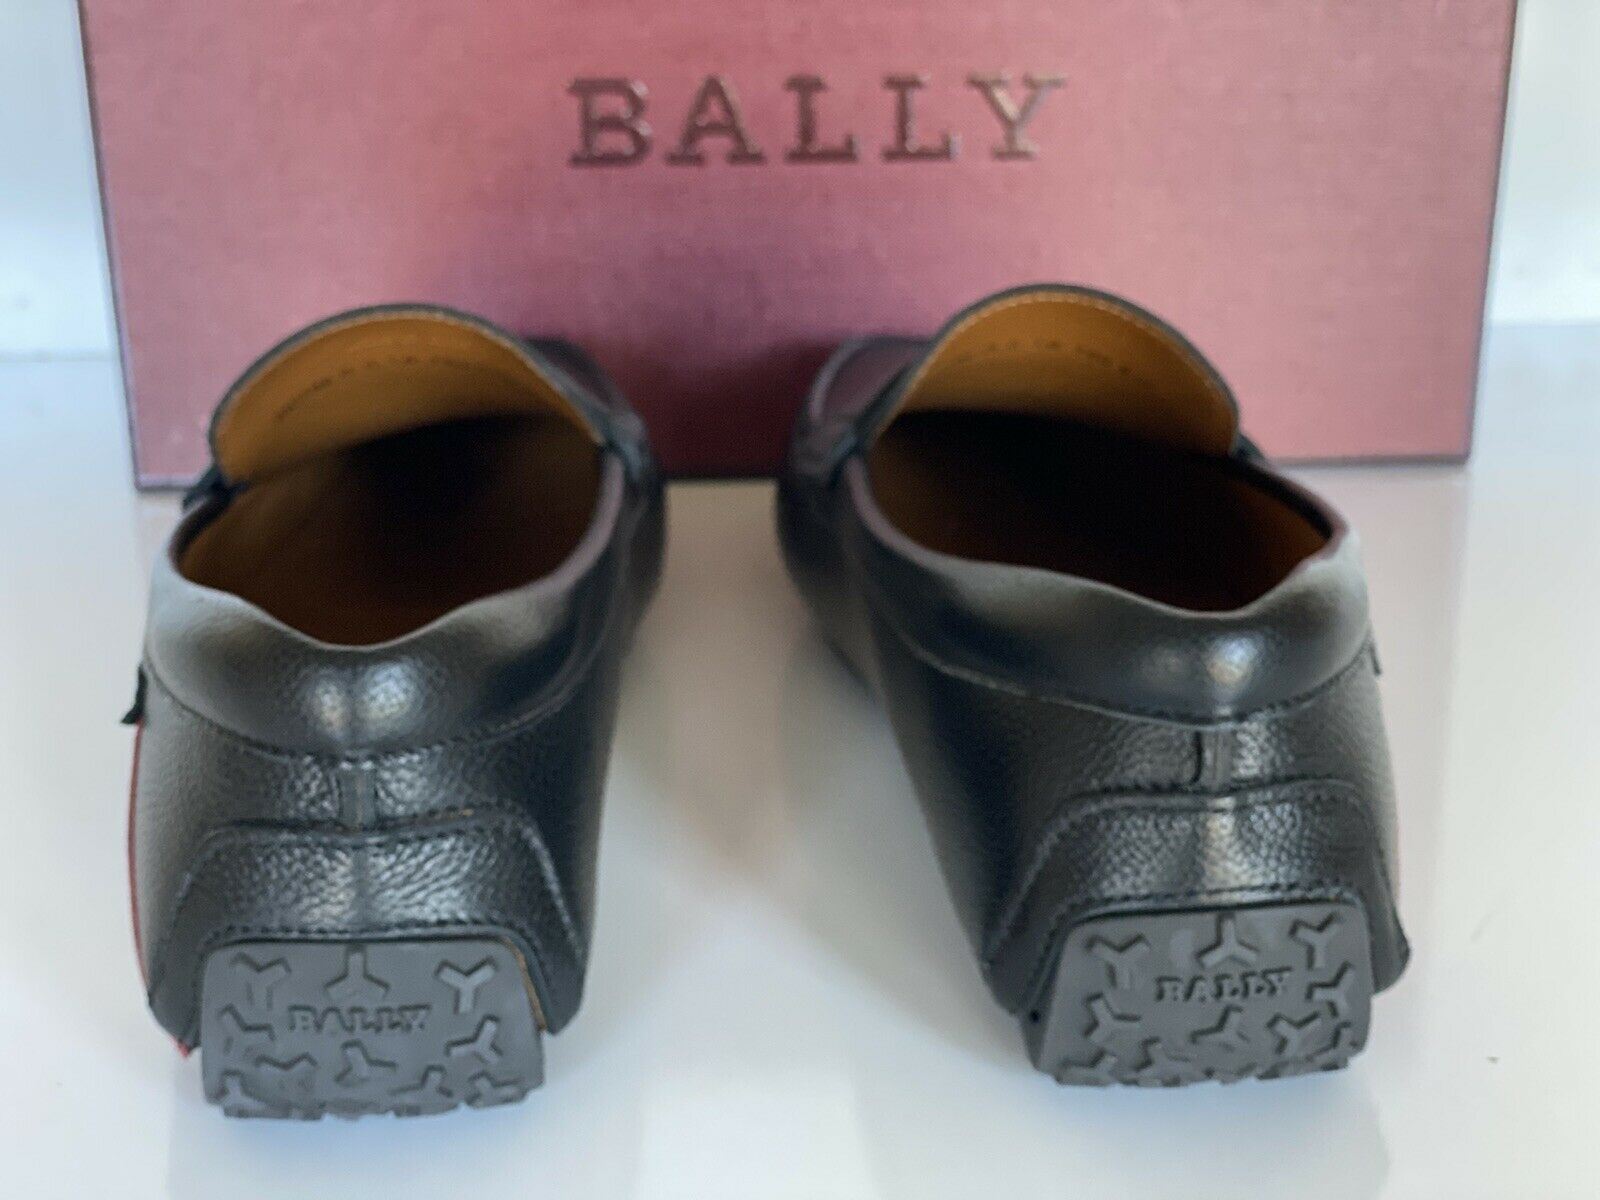 NIB Bally Herren-Loafers aus genarbtem Rindsleder, Schwarz, 7,5 US 6233869 